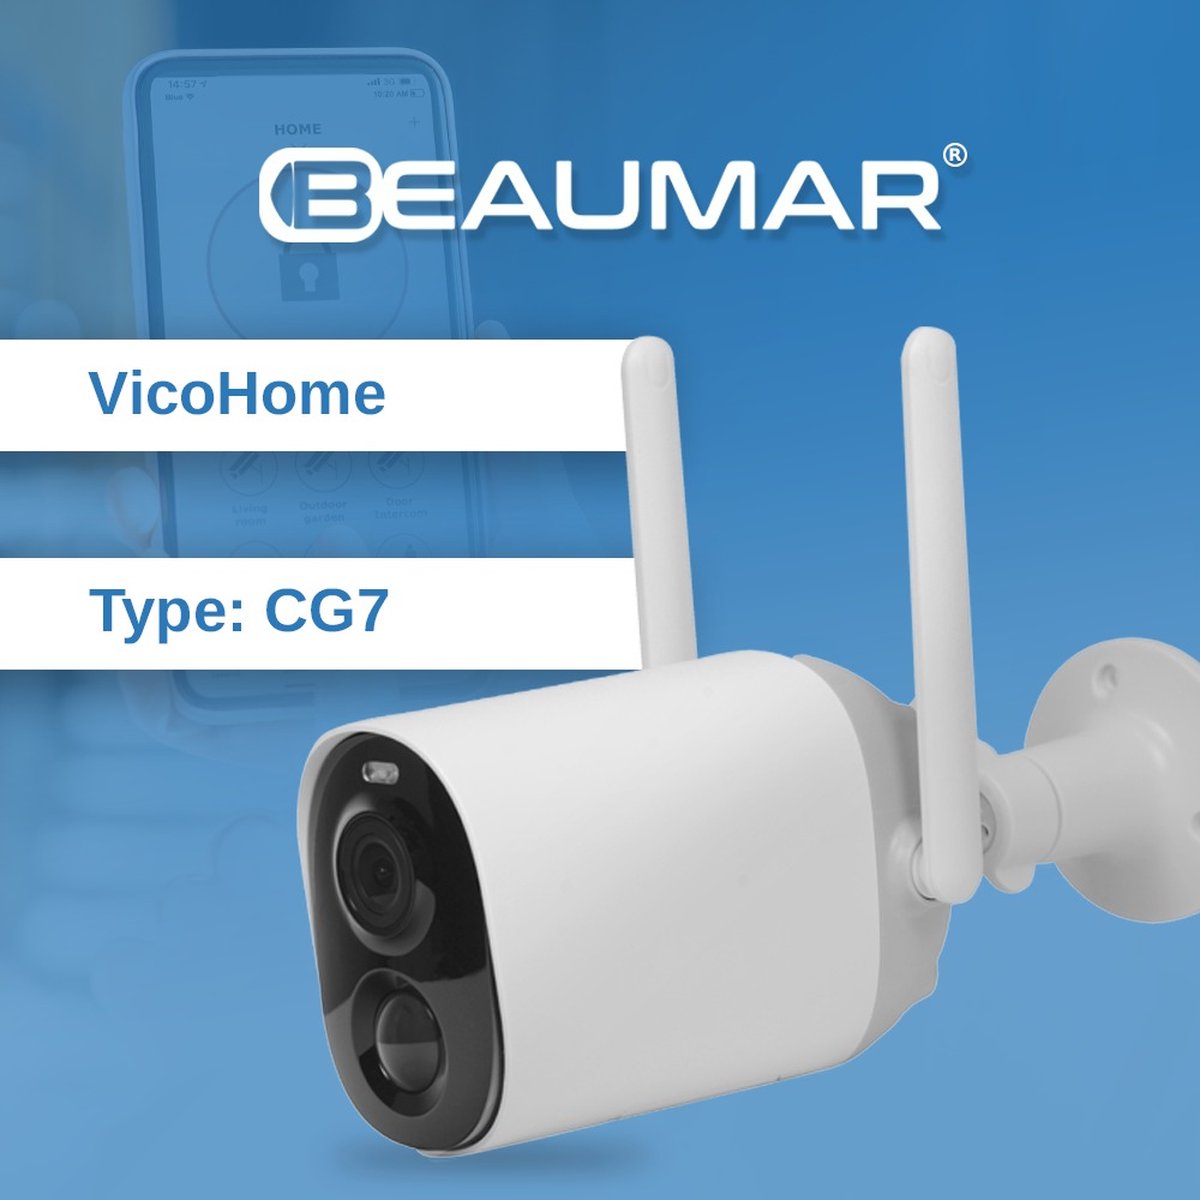 Vicohome CG7 - Beveiligingscamera - Gratis cloud opslag - Accu camera - wifi camera - beveiligingscamera - 3 jaar garantie - Full HD - 8800Mah